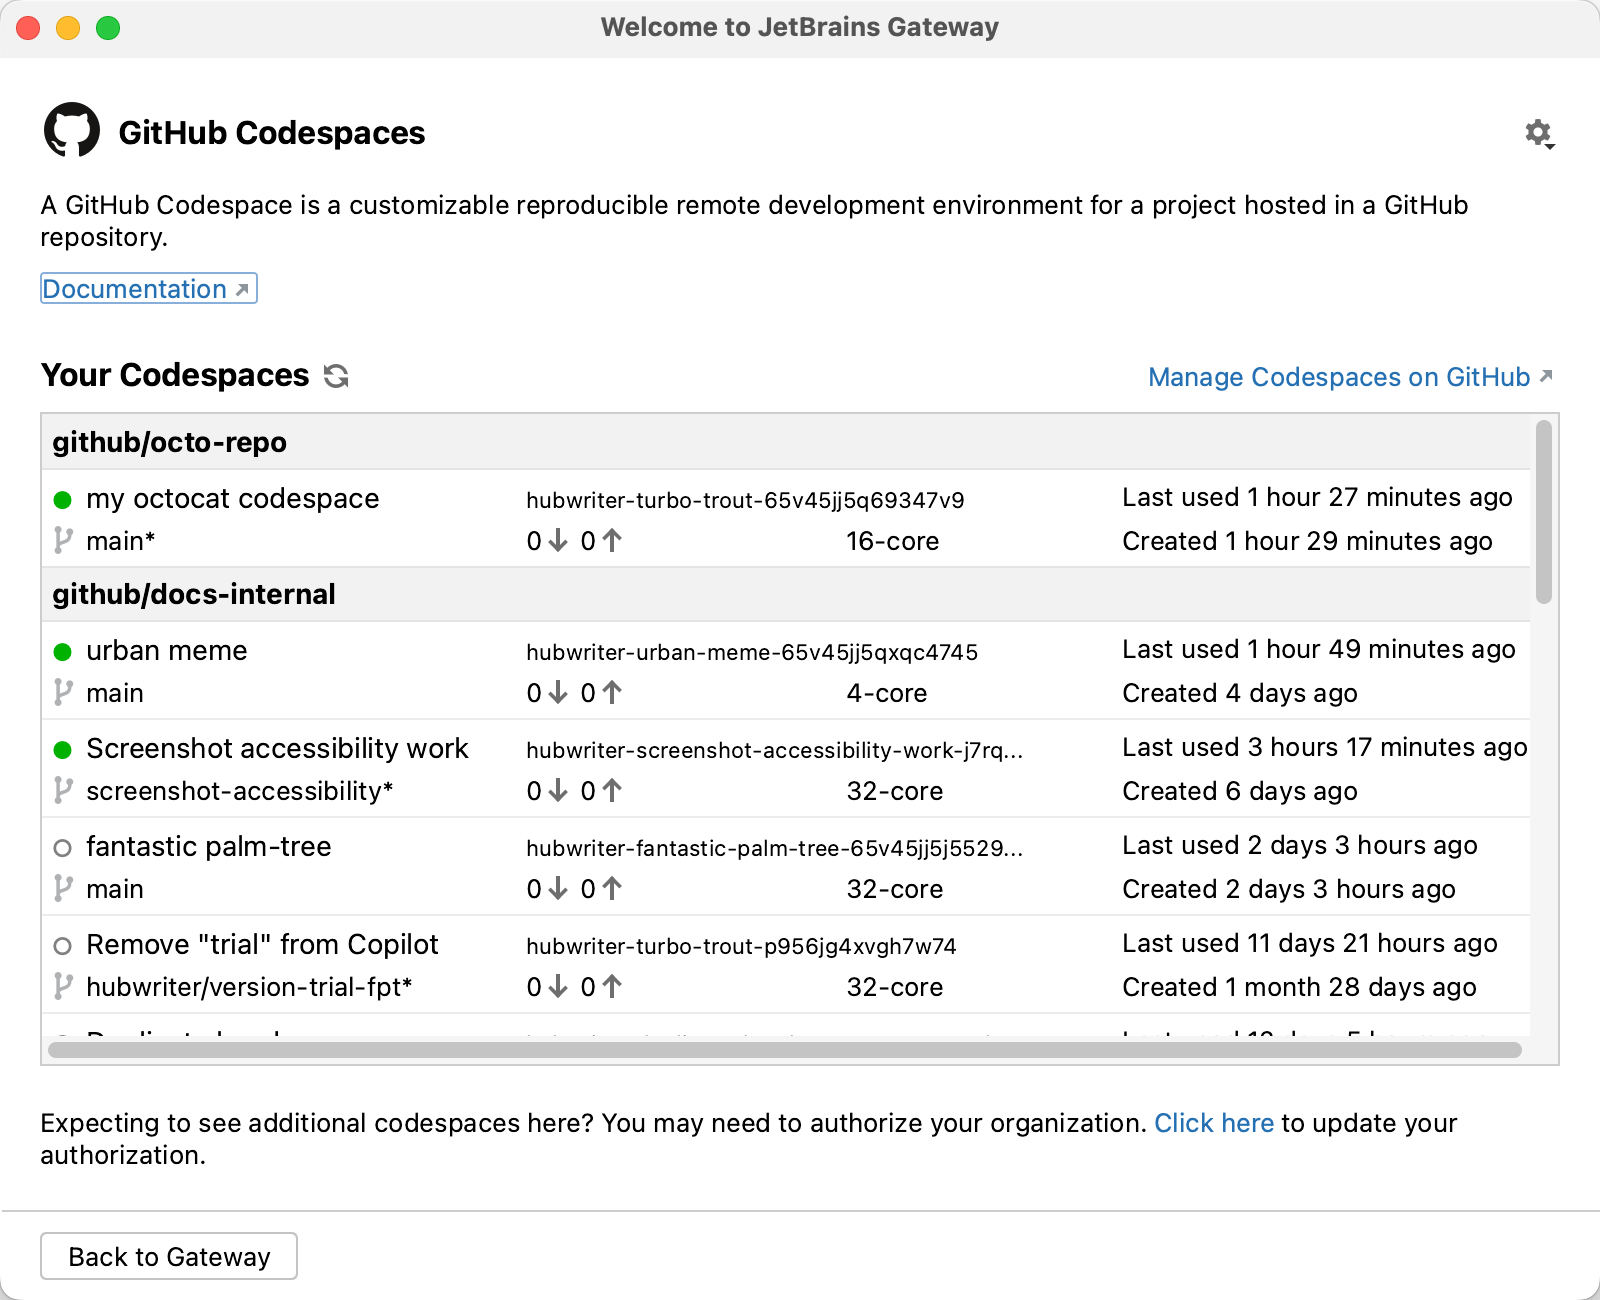 Screenshot: Codespaceliste von JetBrains Gateway